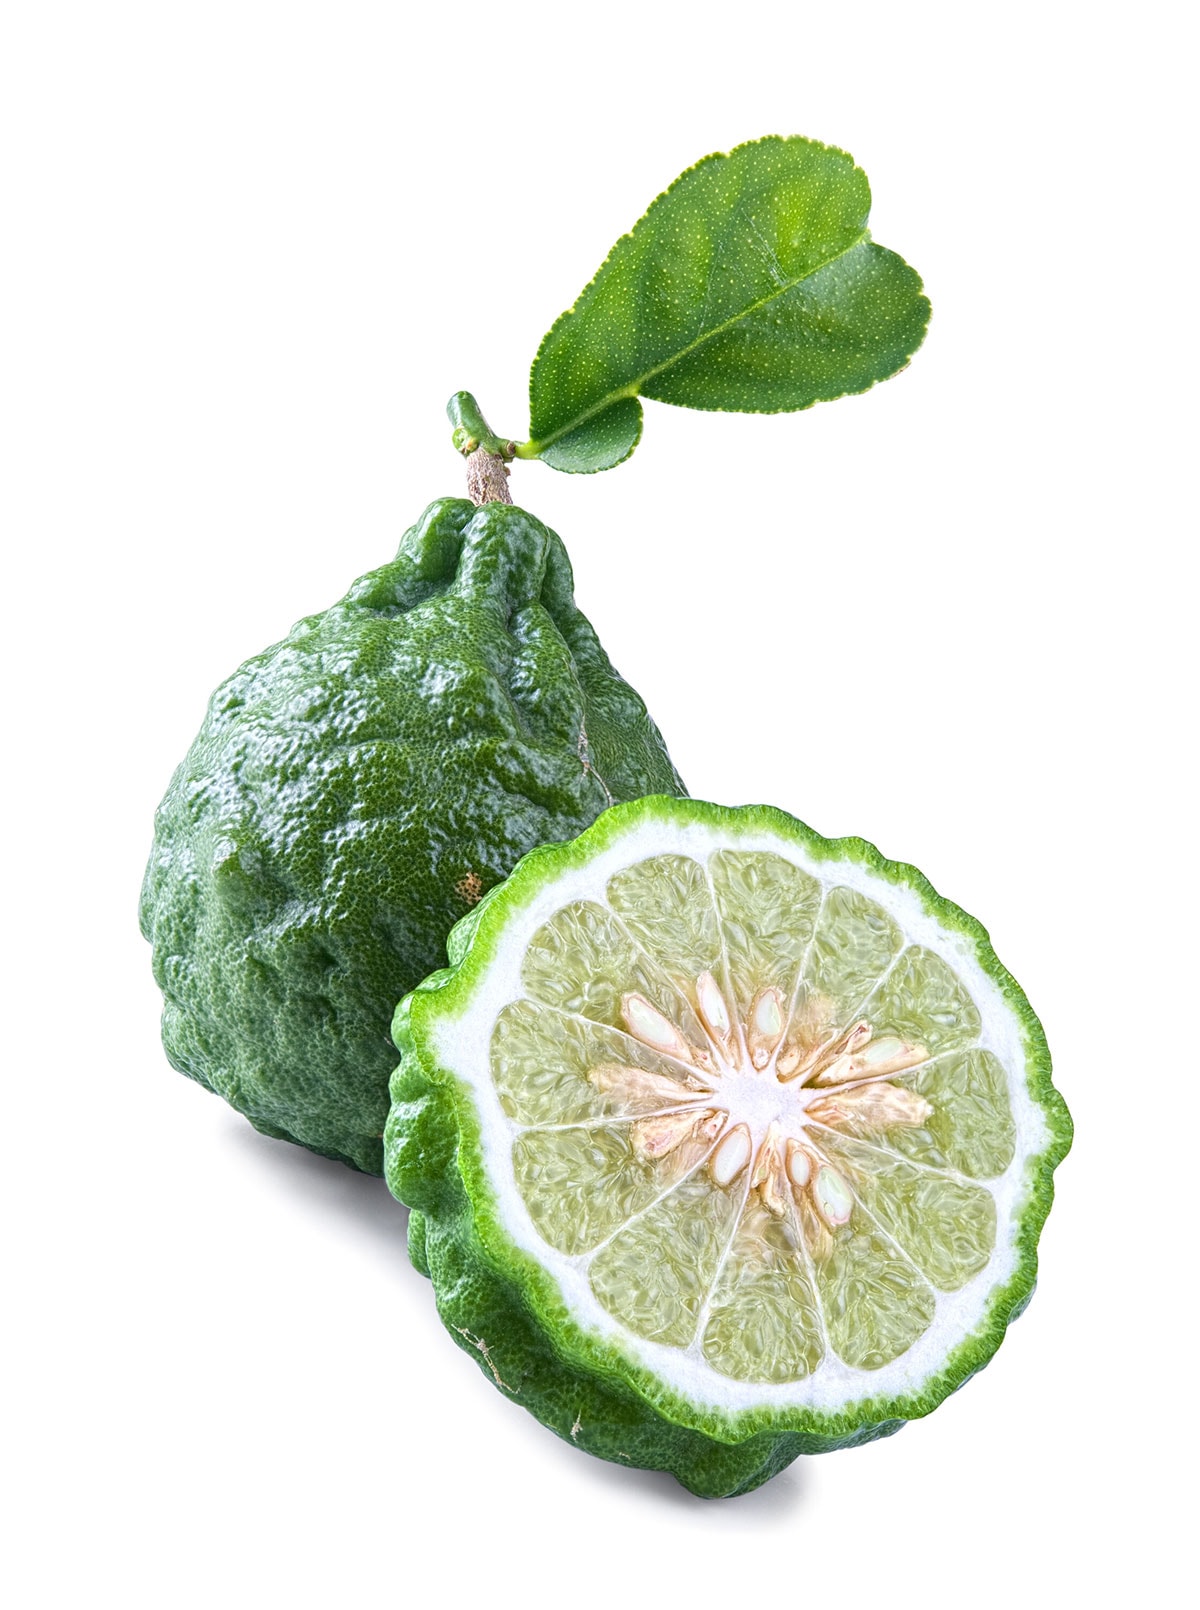 12 Amazing Kaffir Lime Benefits and Uses